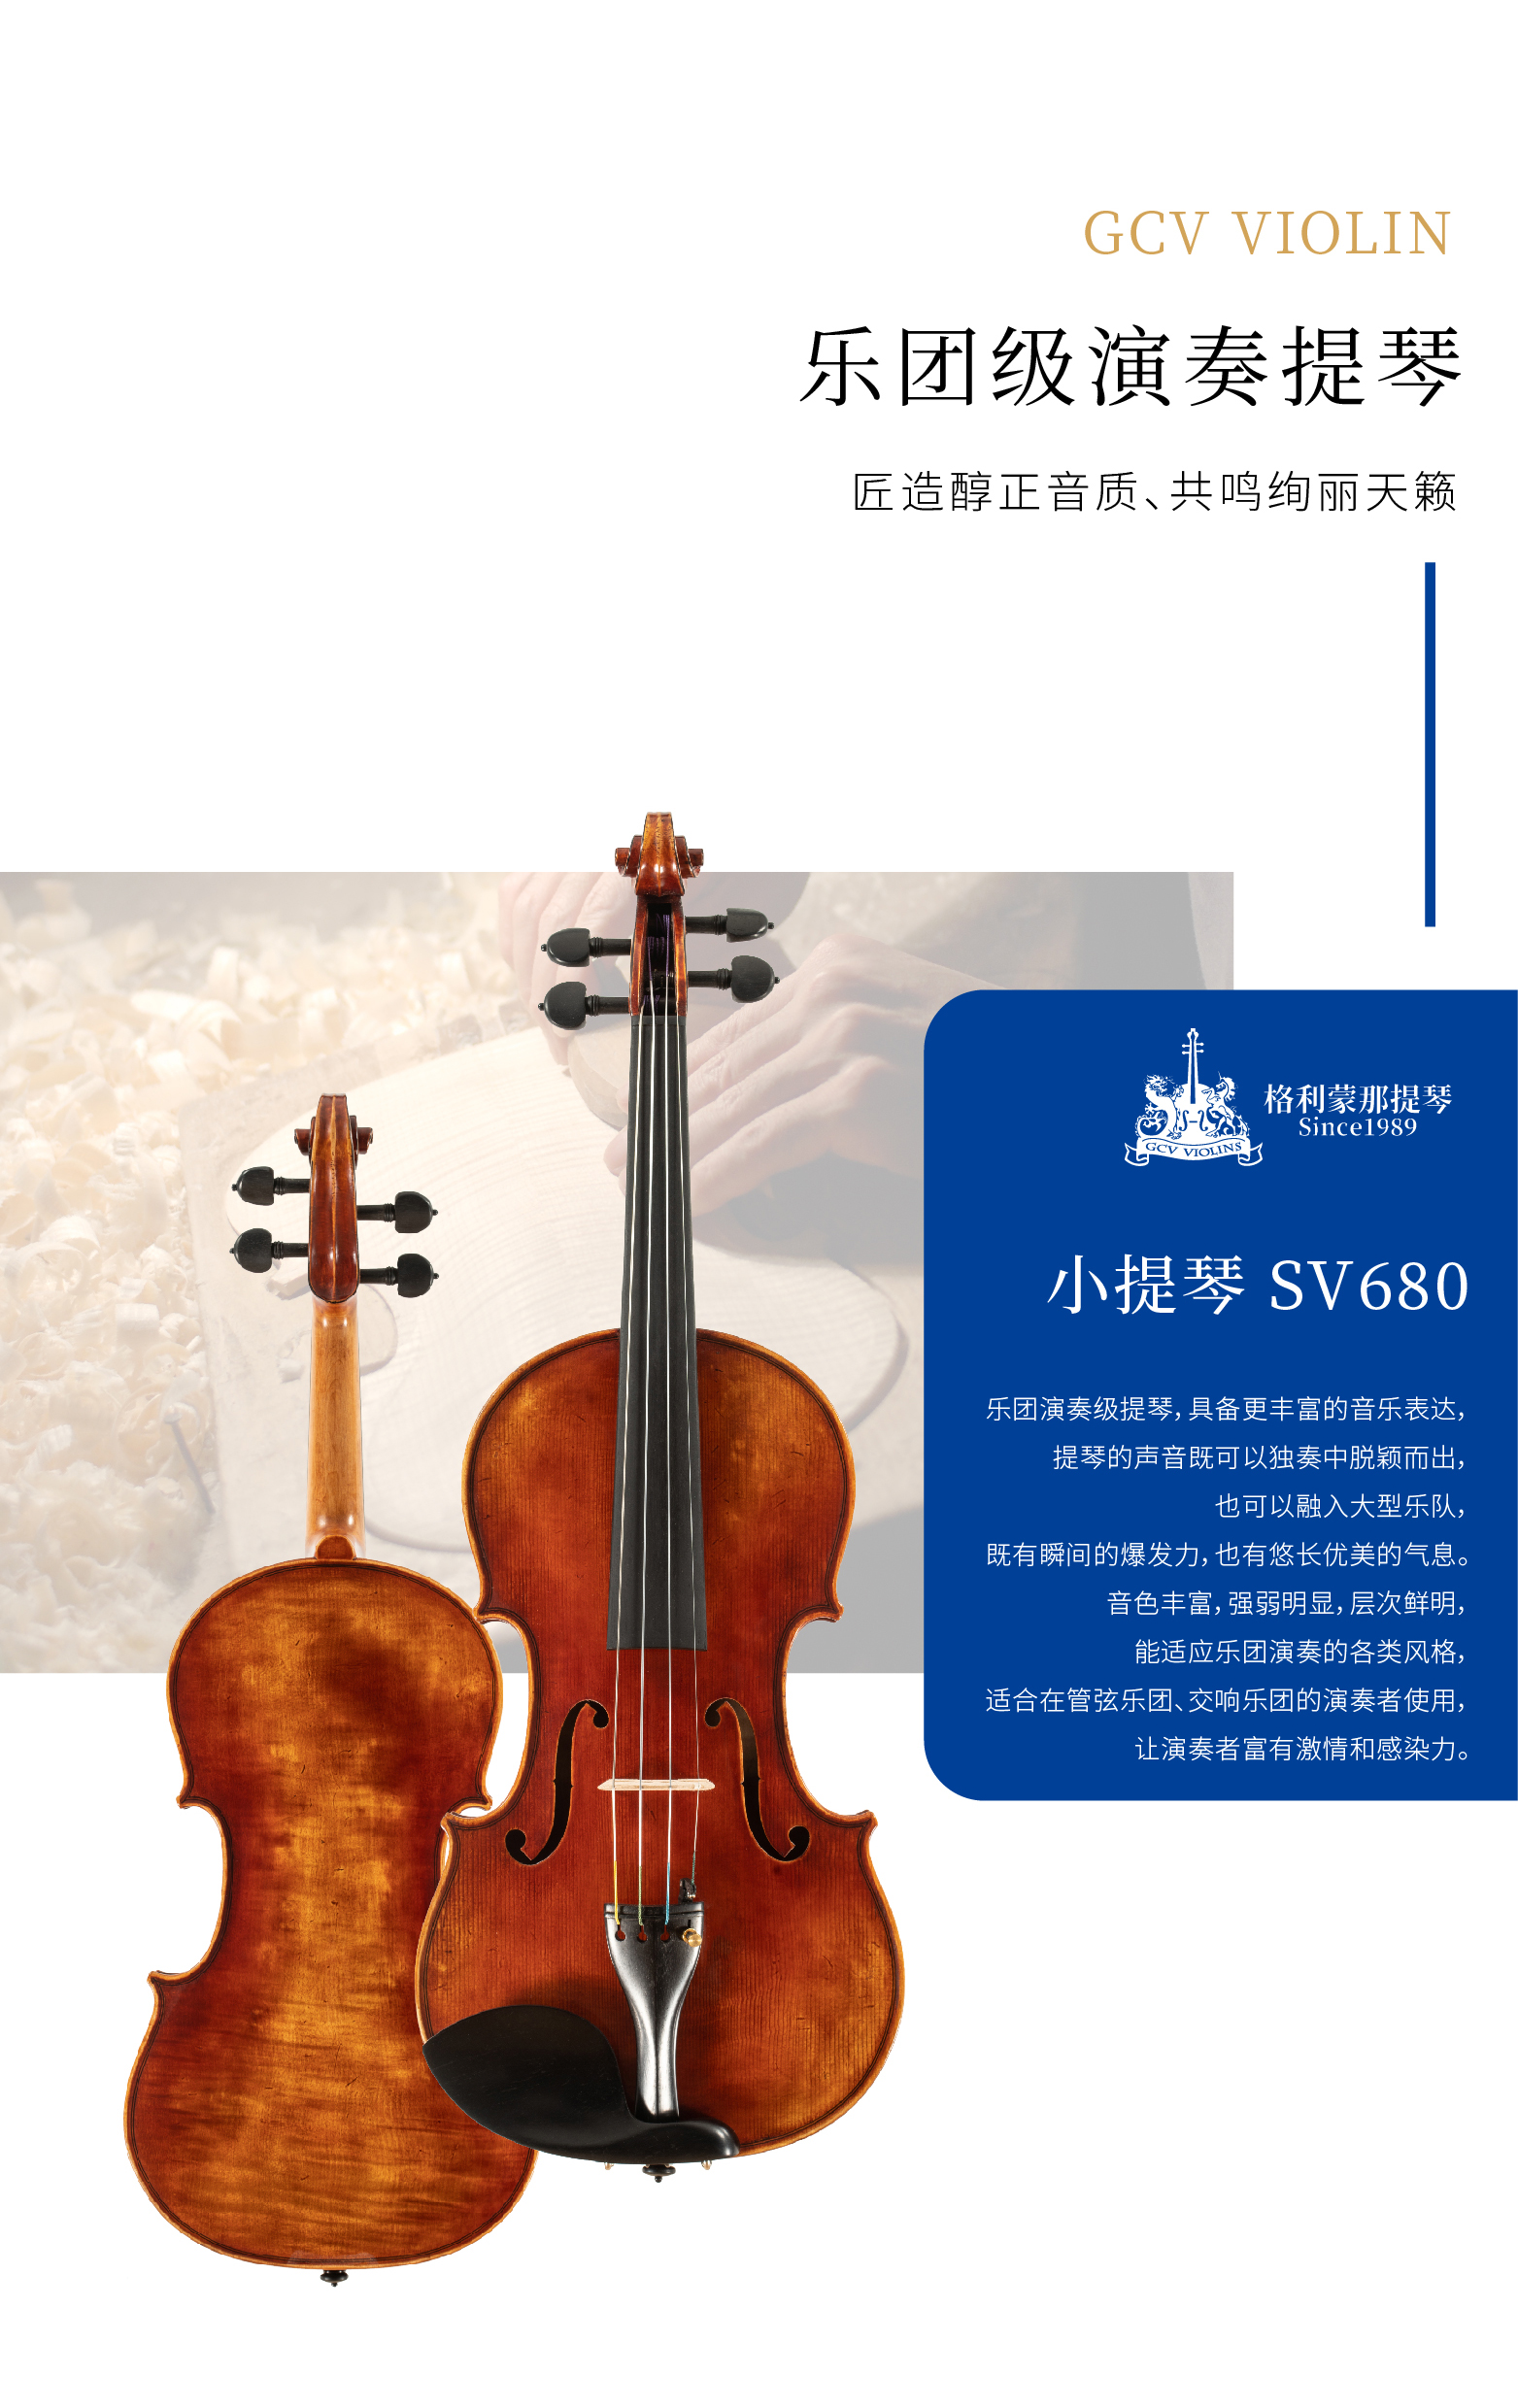 熙珑乐器专营店-详情-v1-2_SV680小提琴_02.jpg